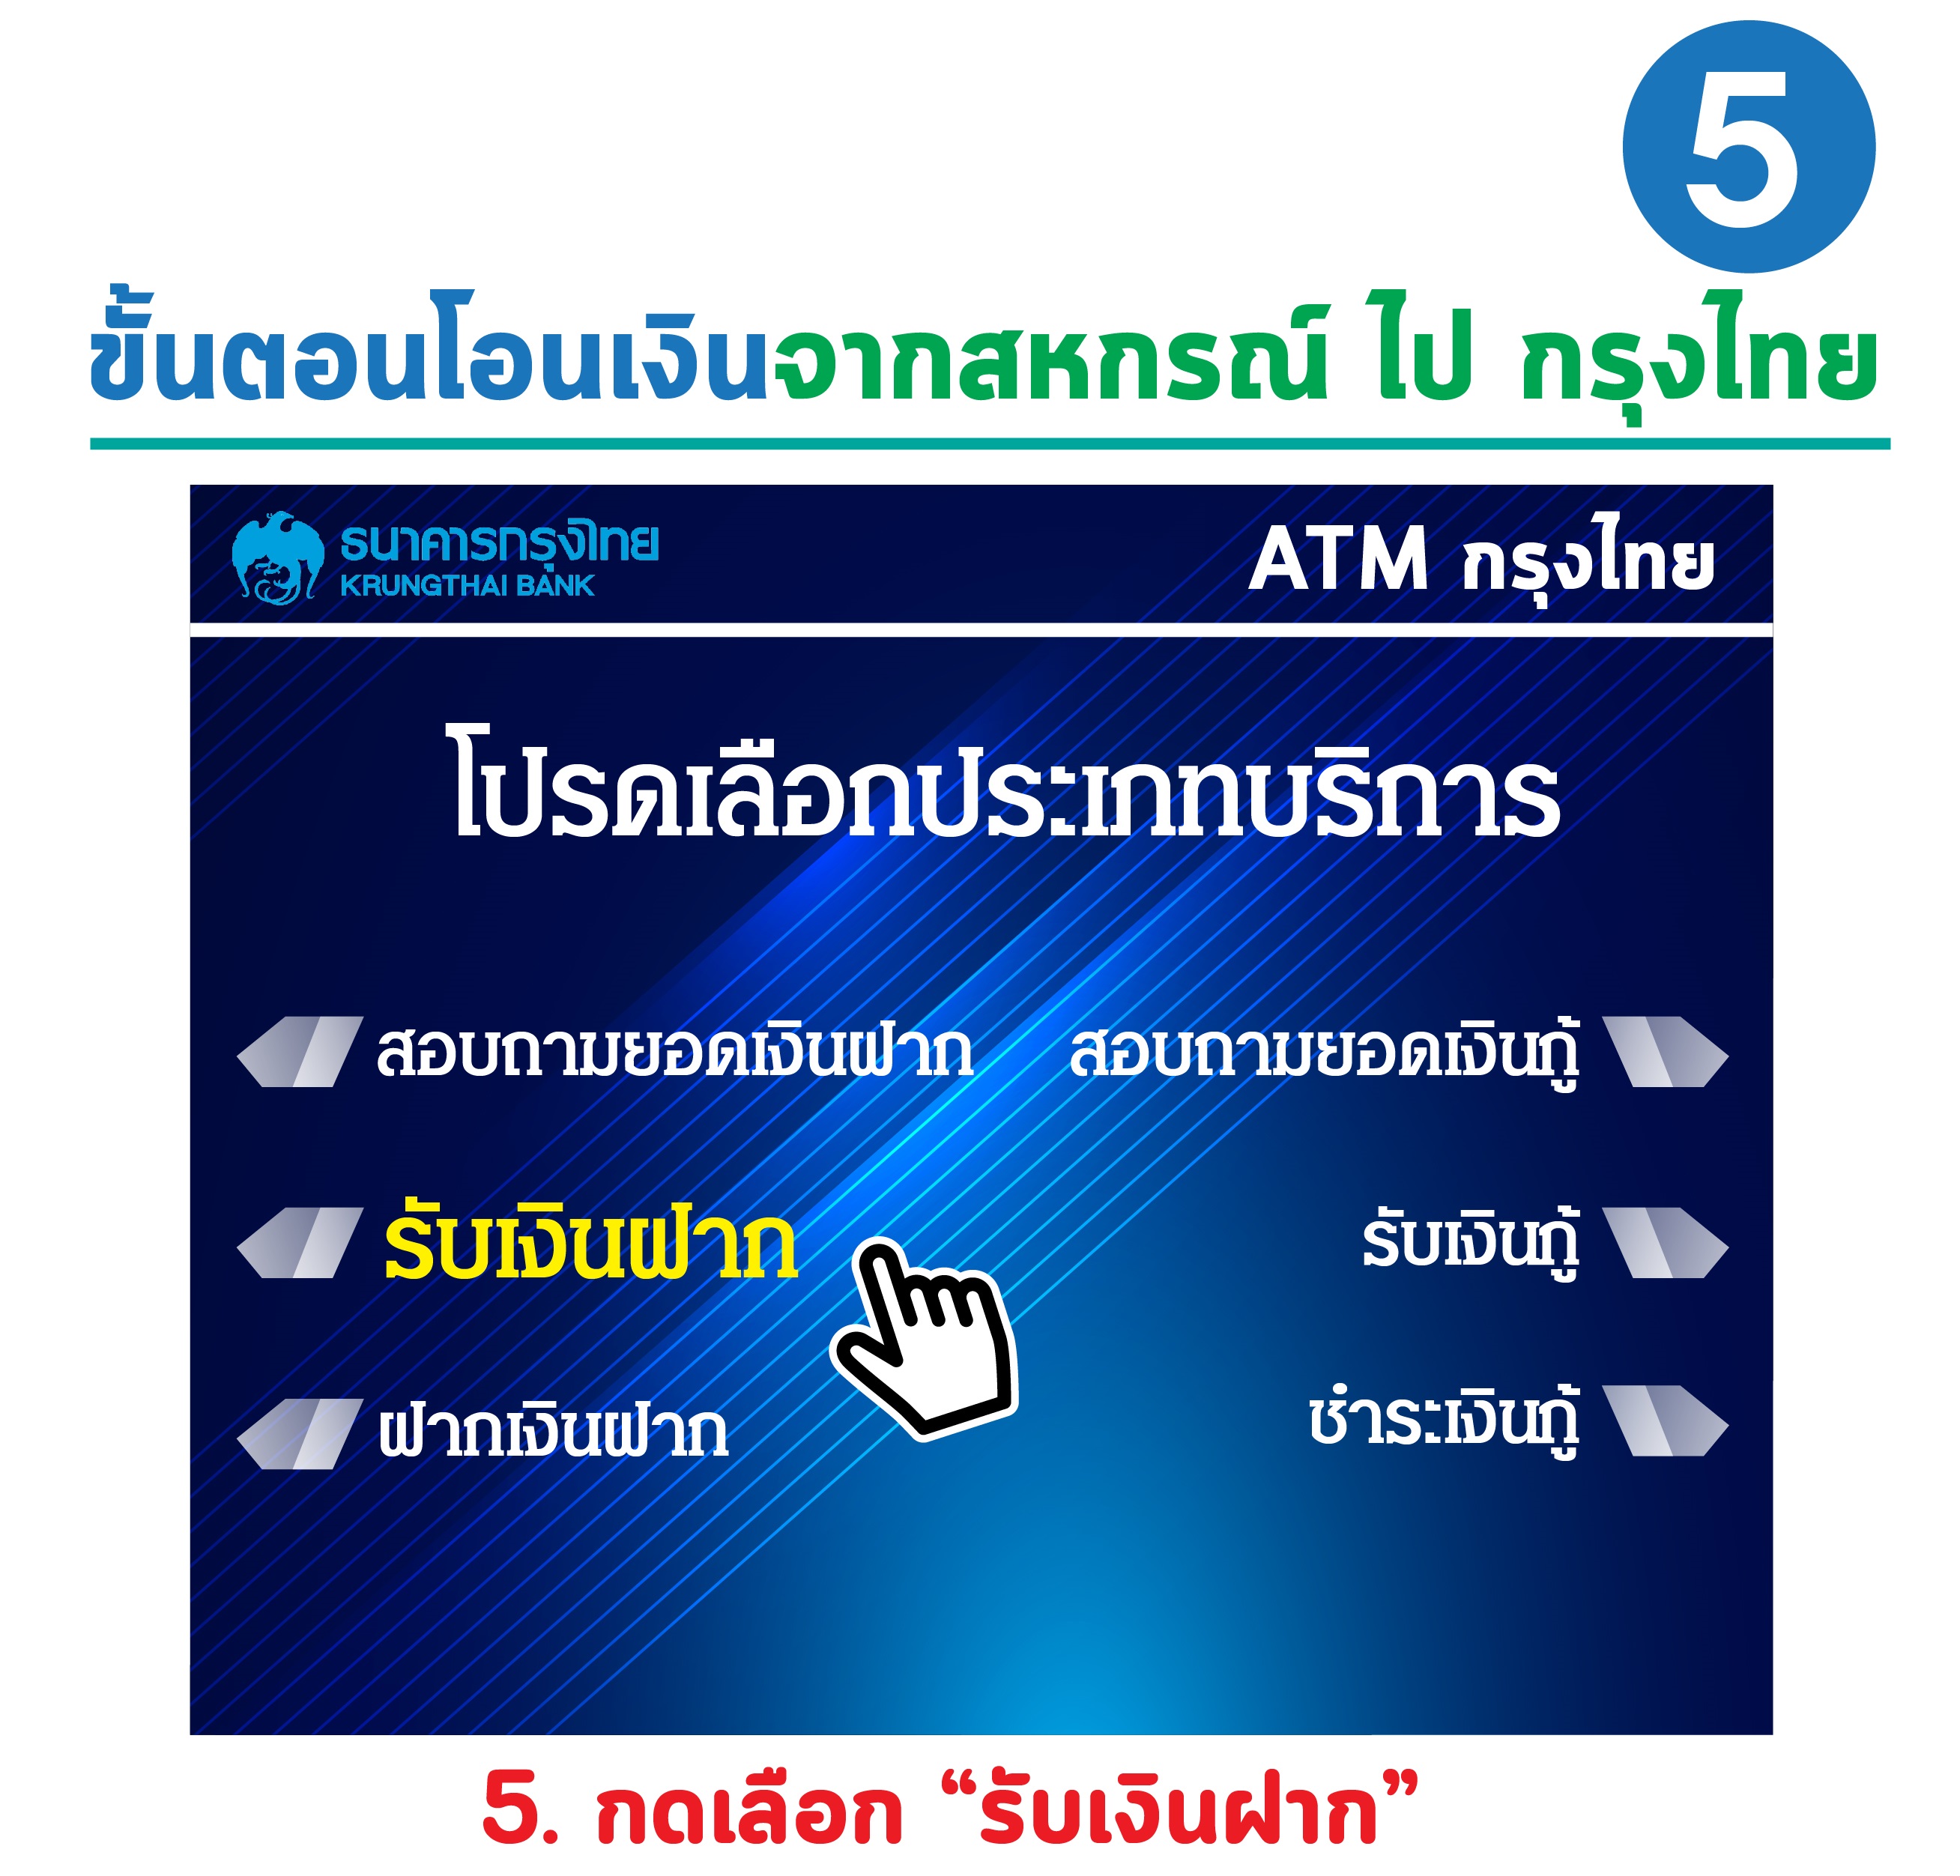 สหกรณ์ Atm (ธนาคารกรุงไทย)